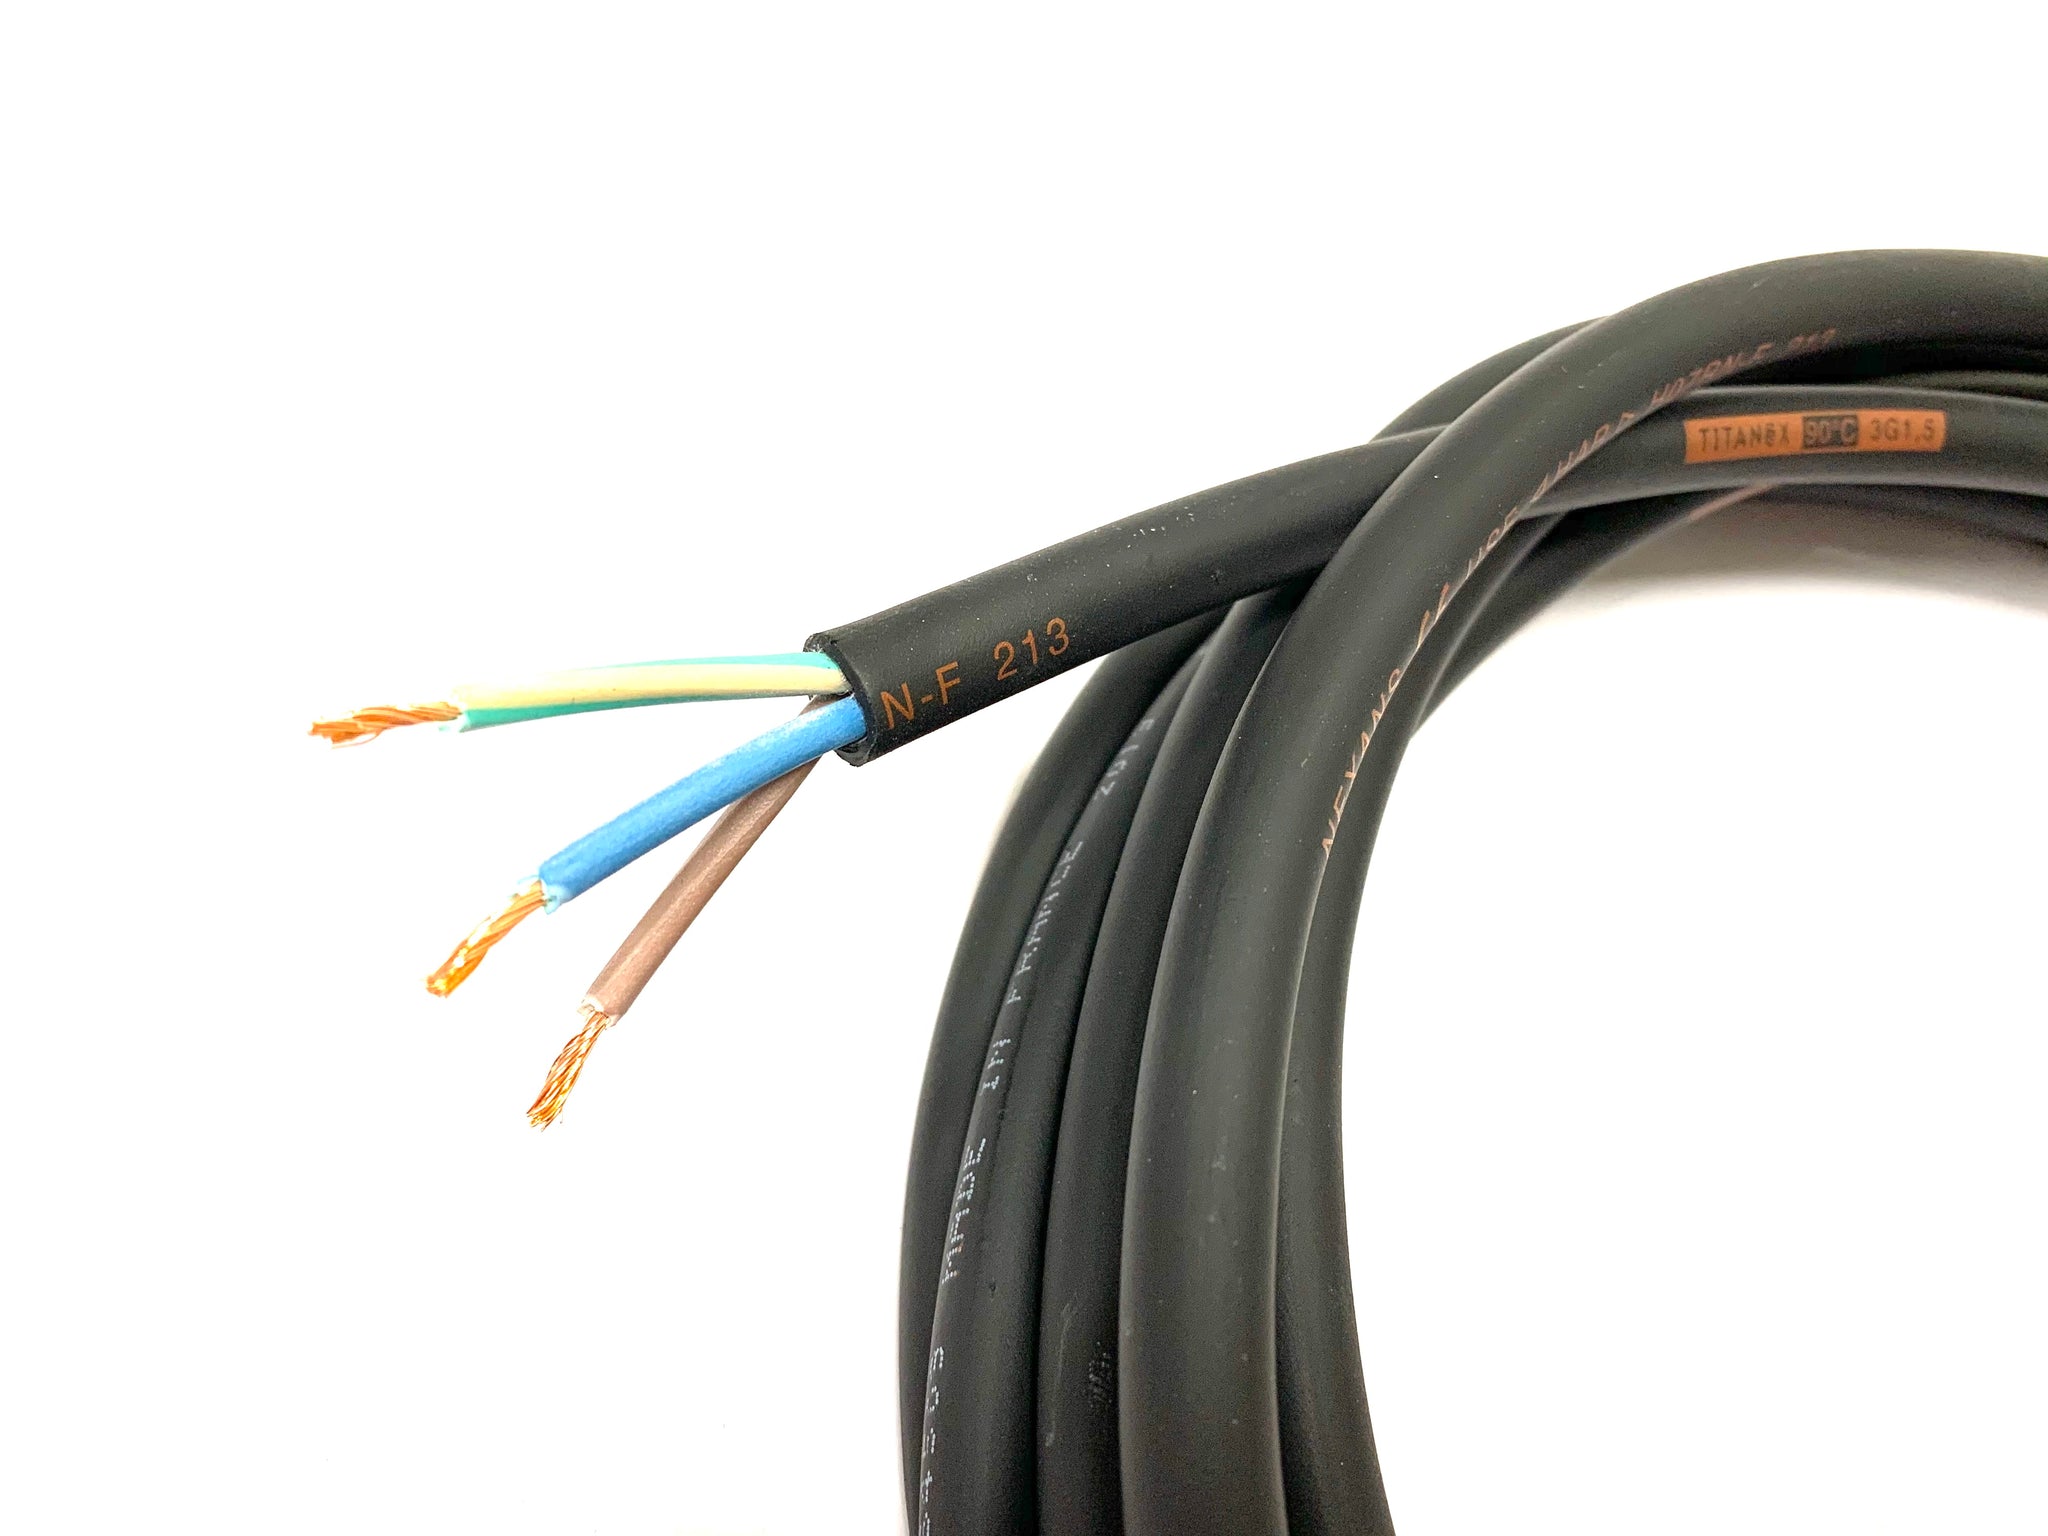 Câble HO7 RNF - 2 x 1.5 mm²